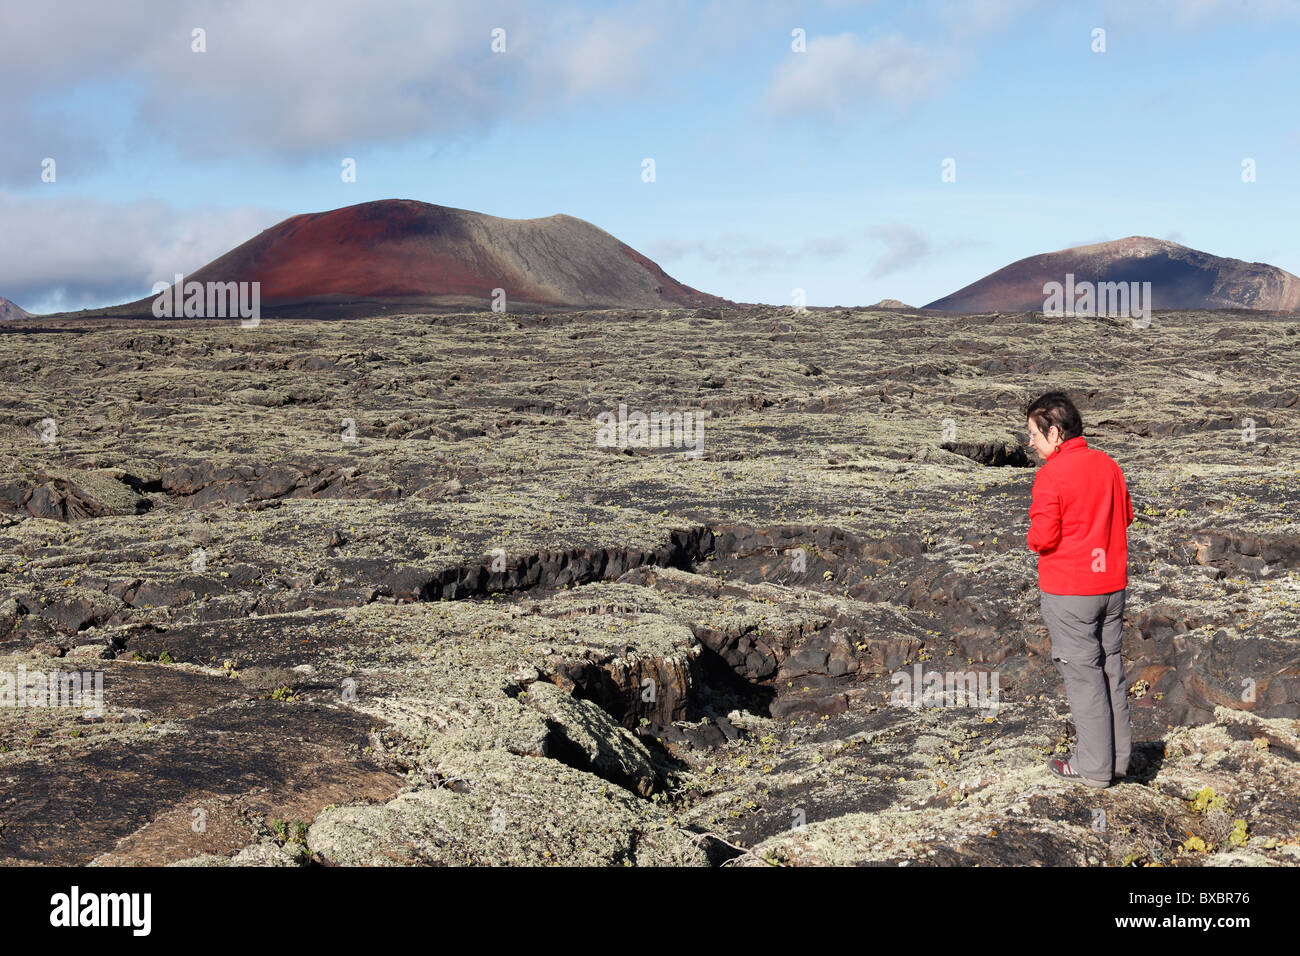 Caldera Colorada y Montaña Ortiz volcanes, mujer de pie en un campo de lava con líquenes, Lanzarote, España, Europa Foto de stock